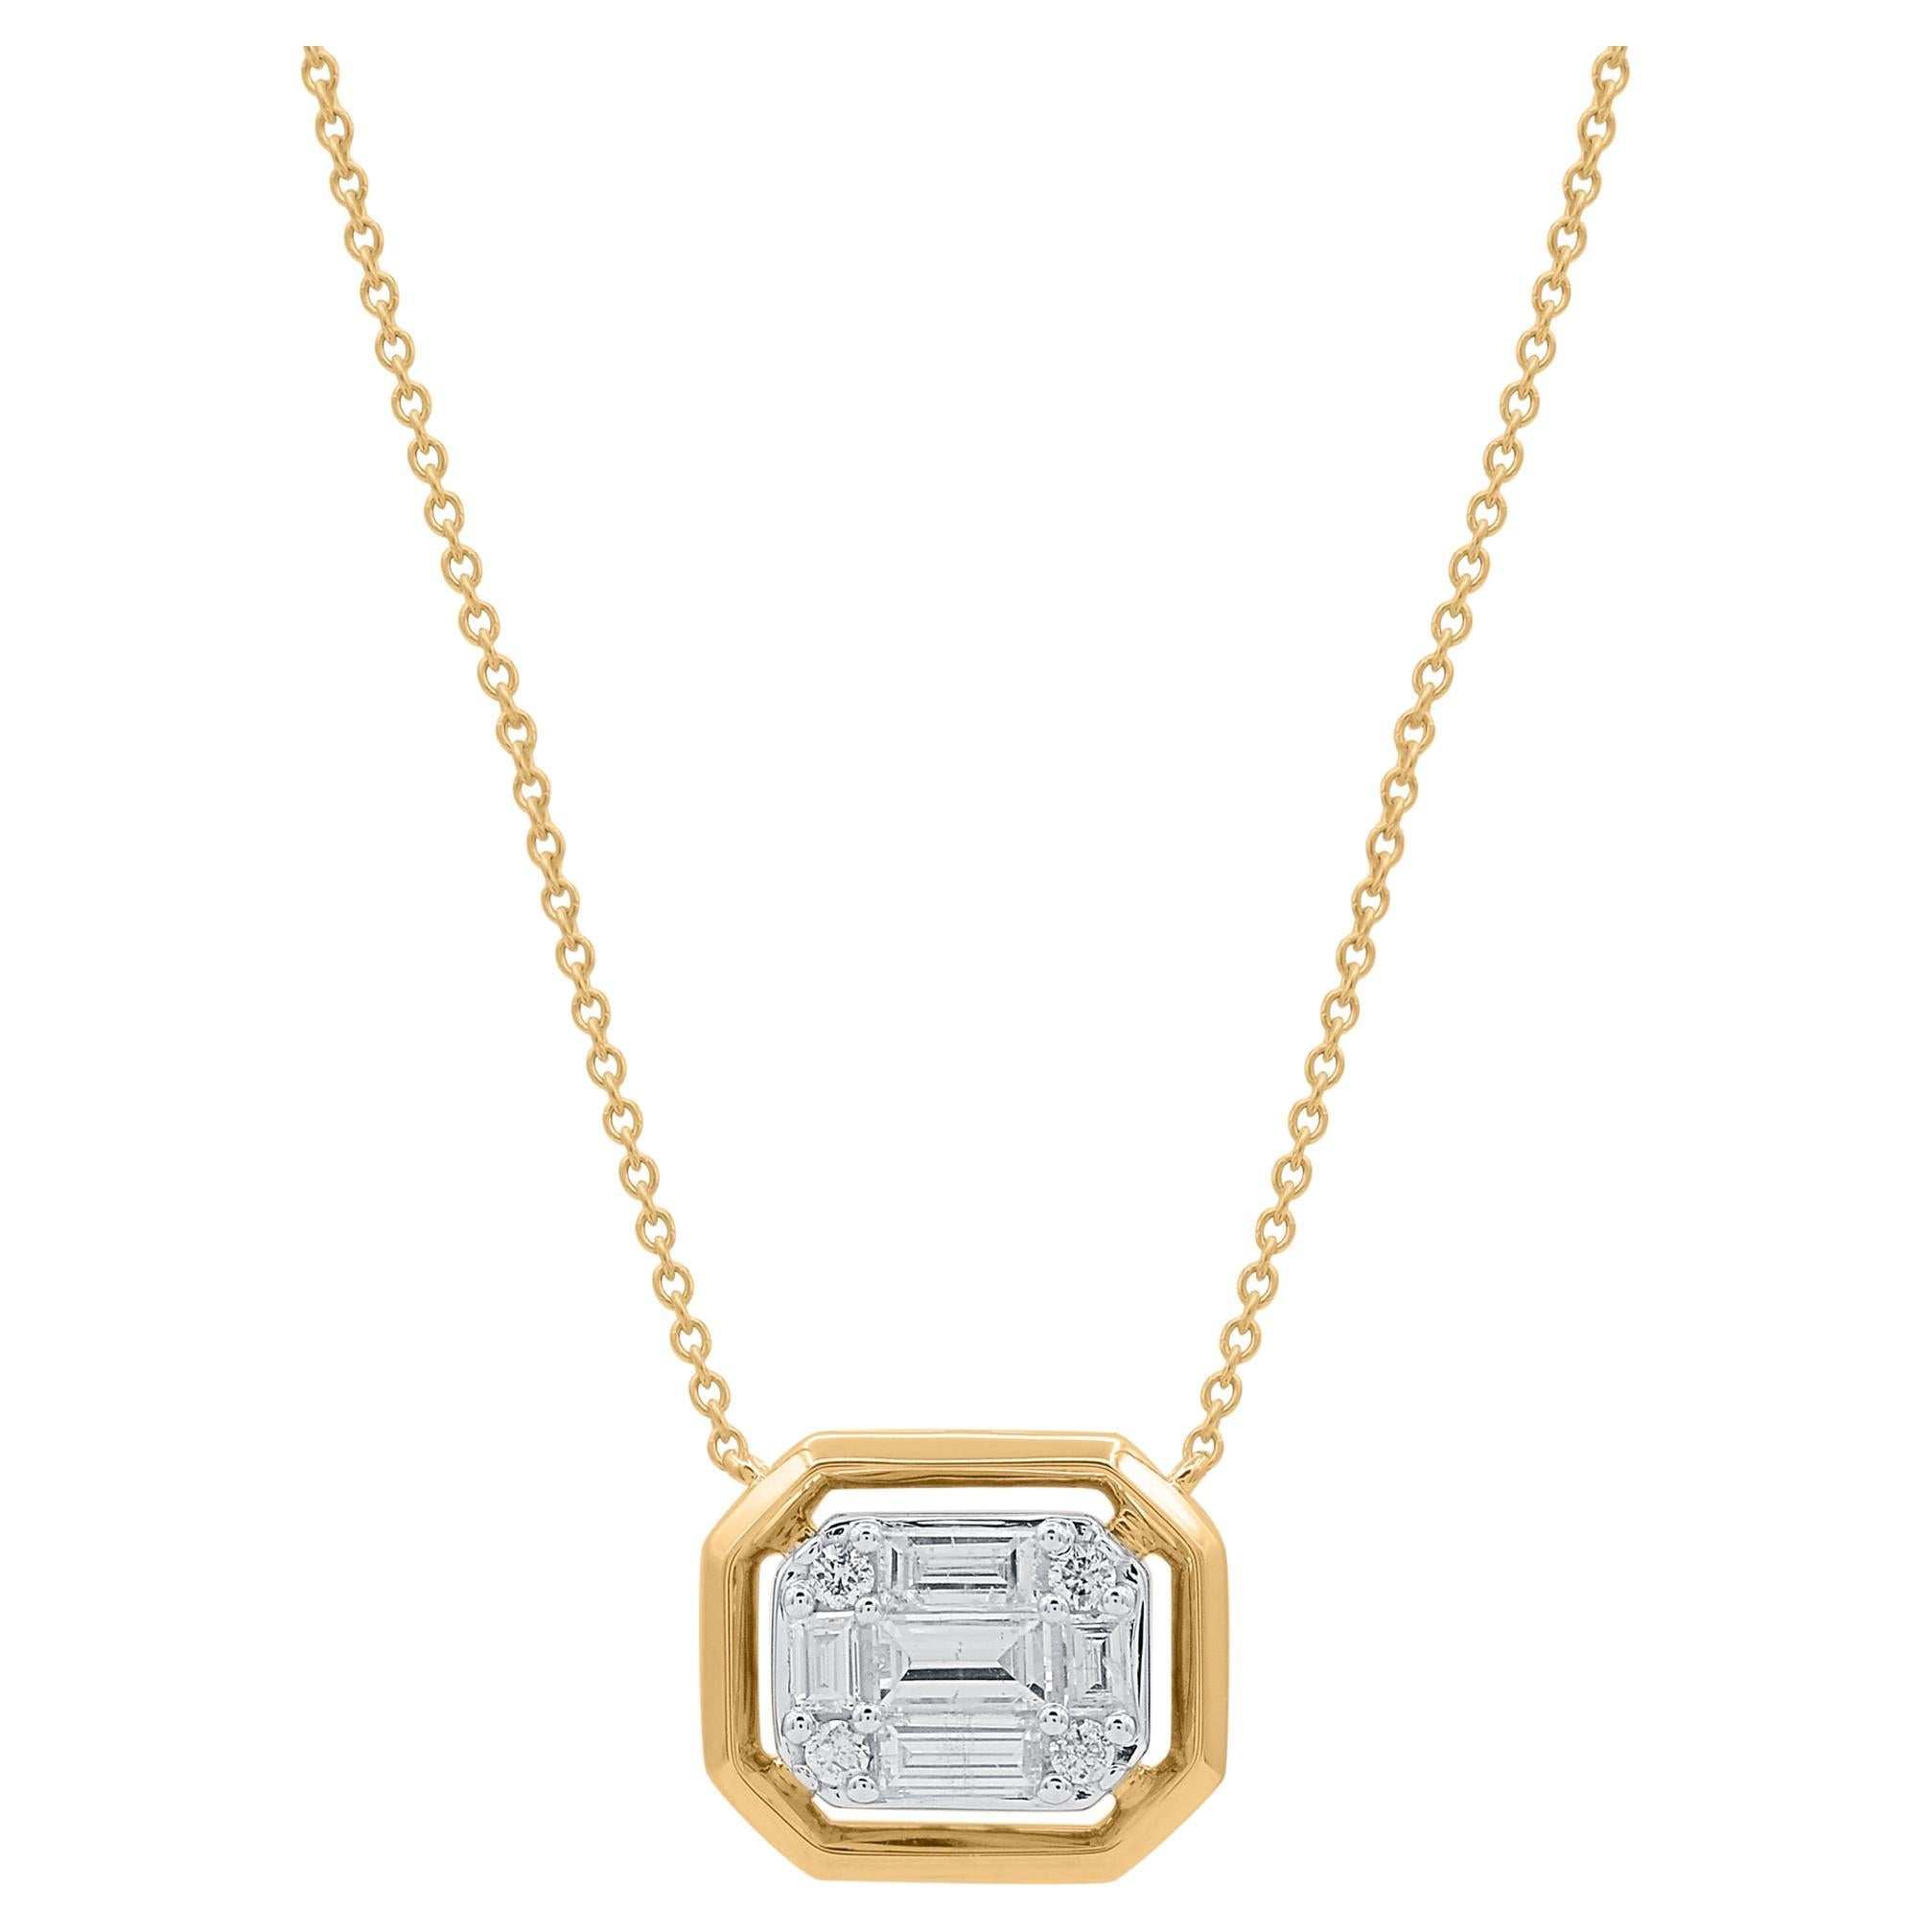 TJD 0.50 Carat Baguette & Brilliant Cut Diamond 18K Yellow Gold Pendant Necklace For Sale